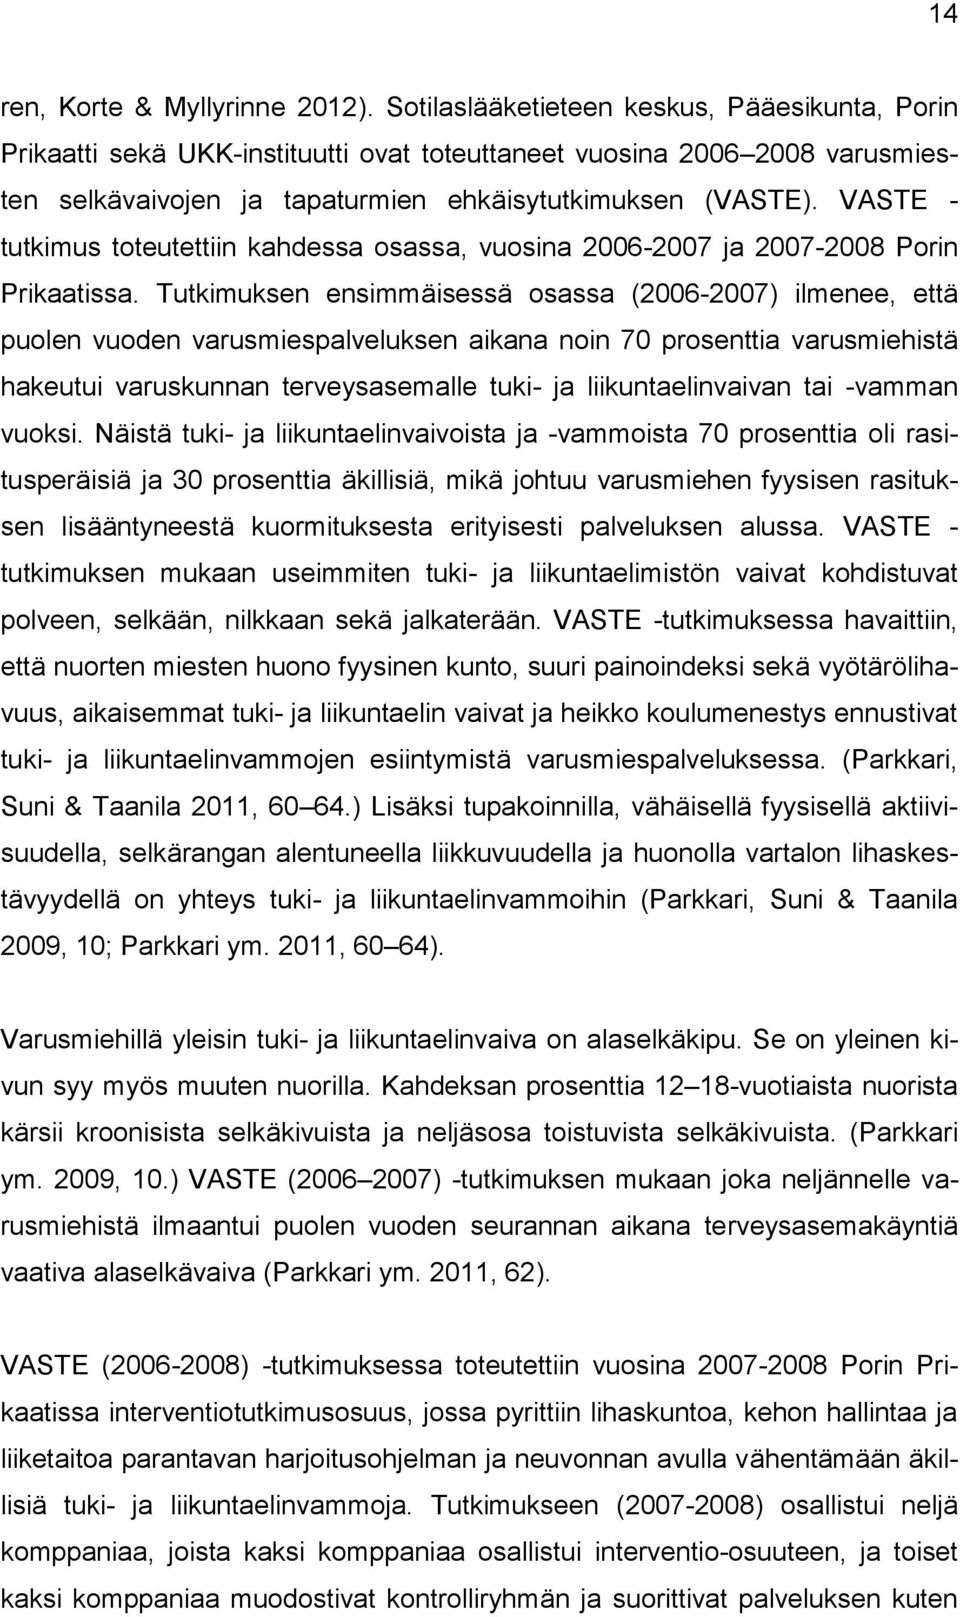 VASTE - tutkimus toteutettiin kahdessa osassa, vuosina 2006-2007 ja 2007-2008 Porin Prikaatissa.